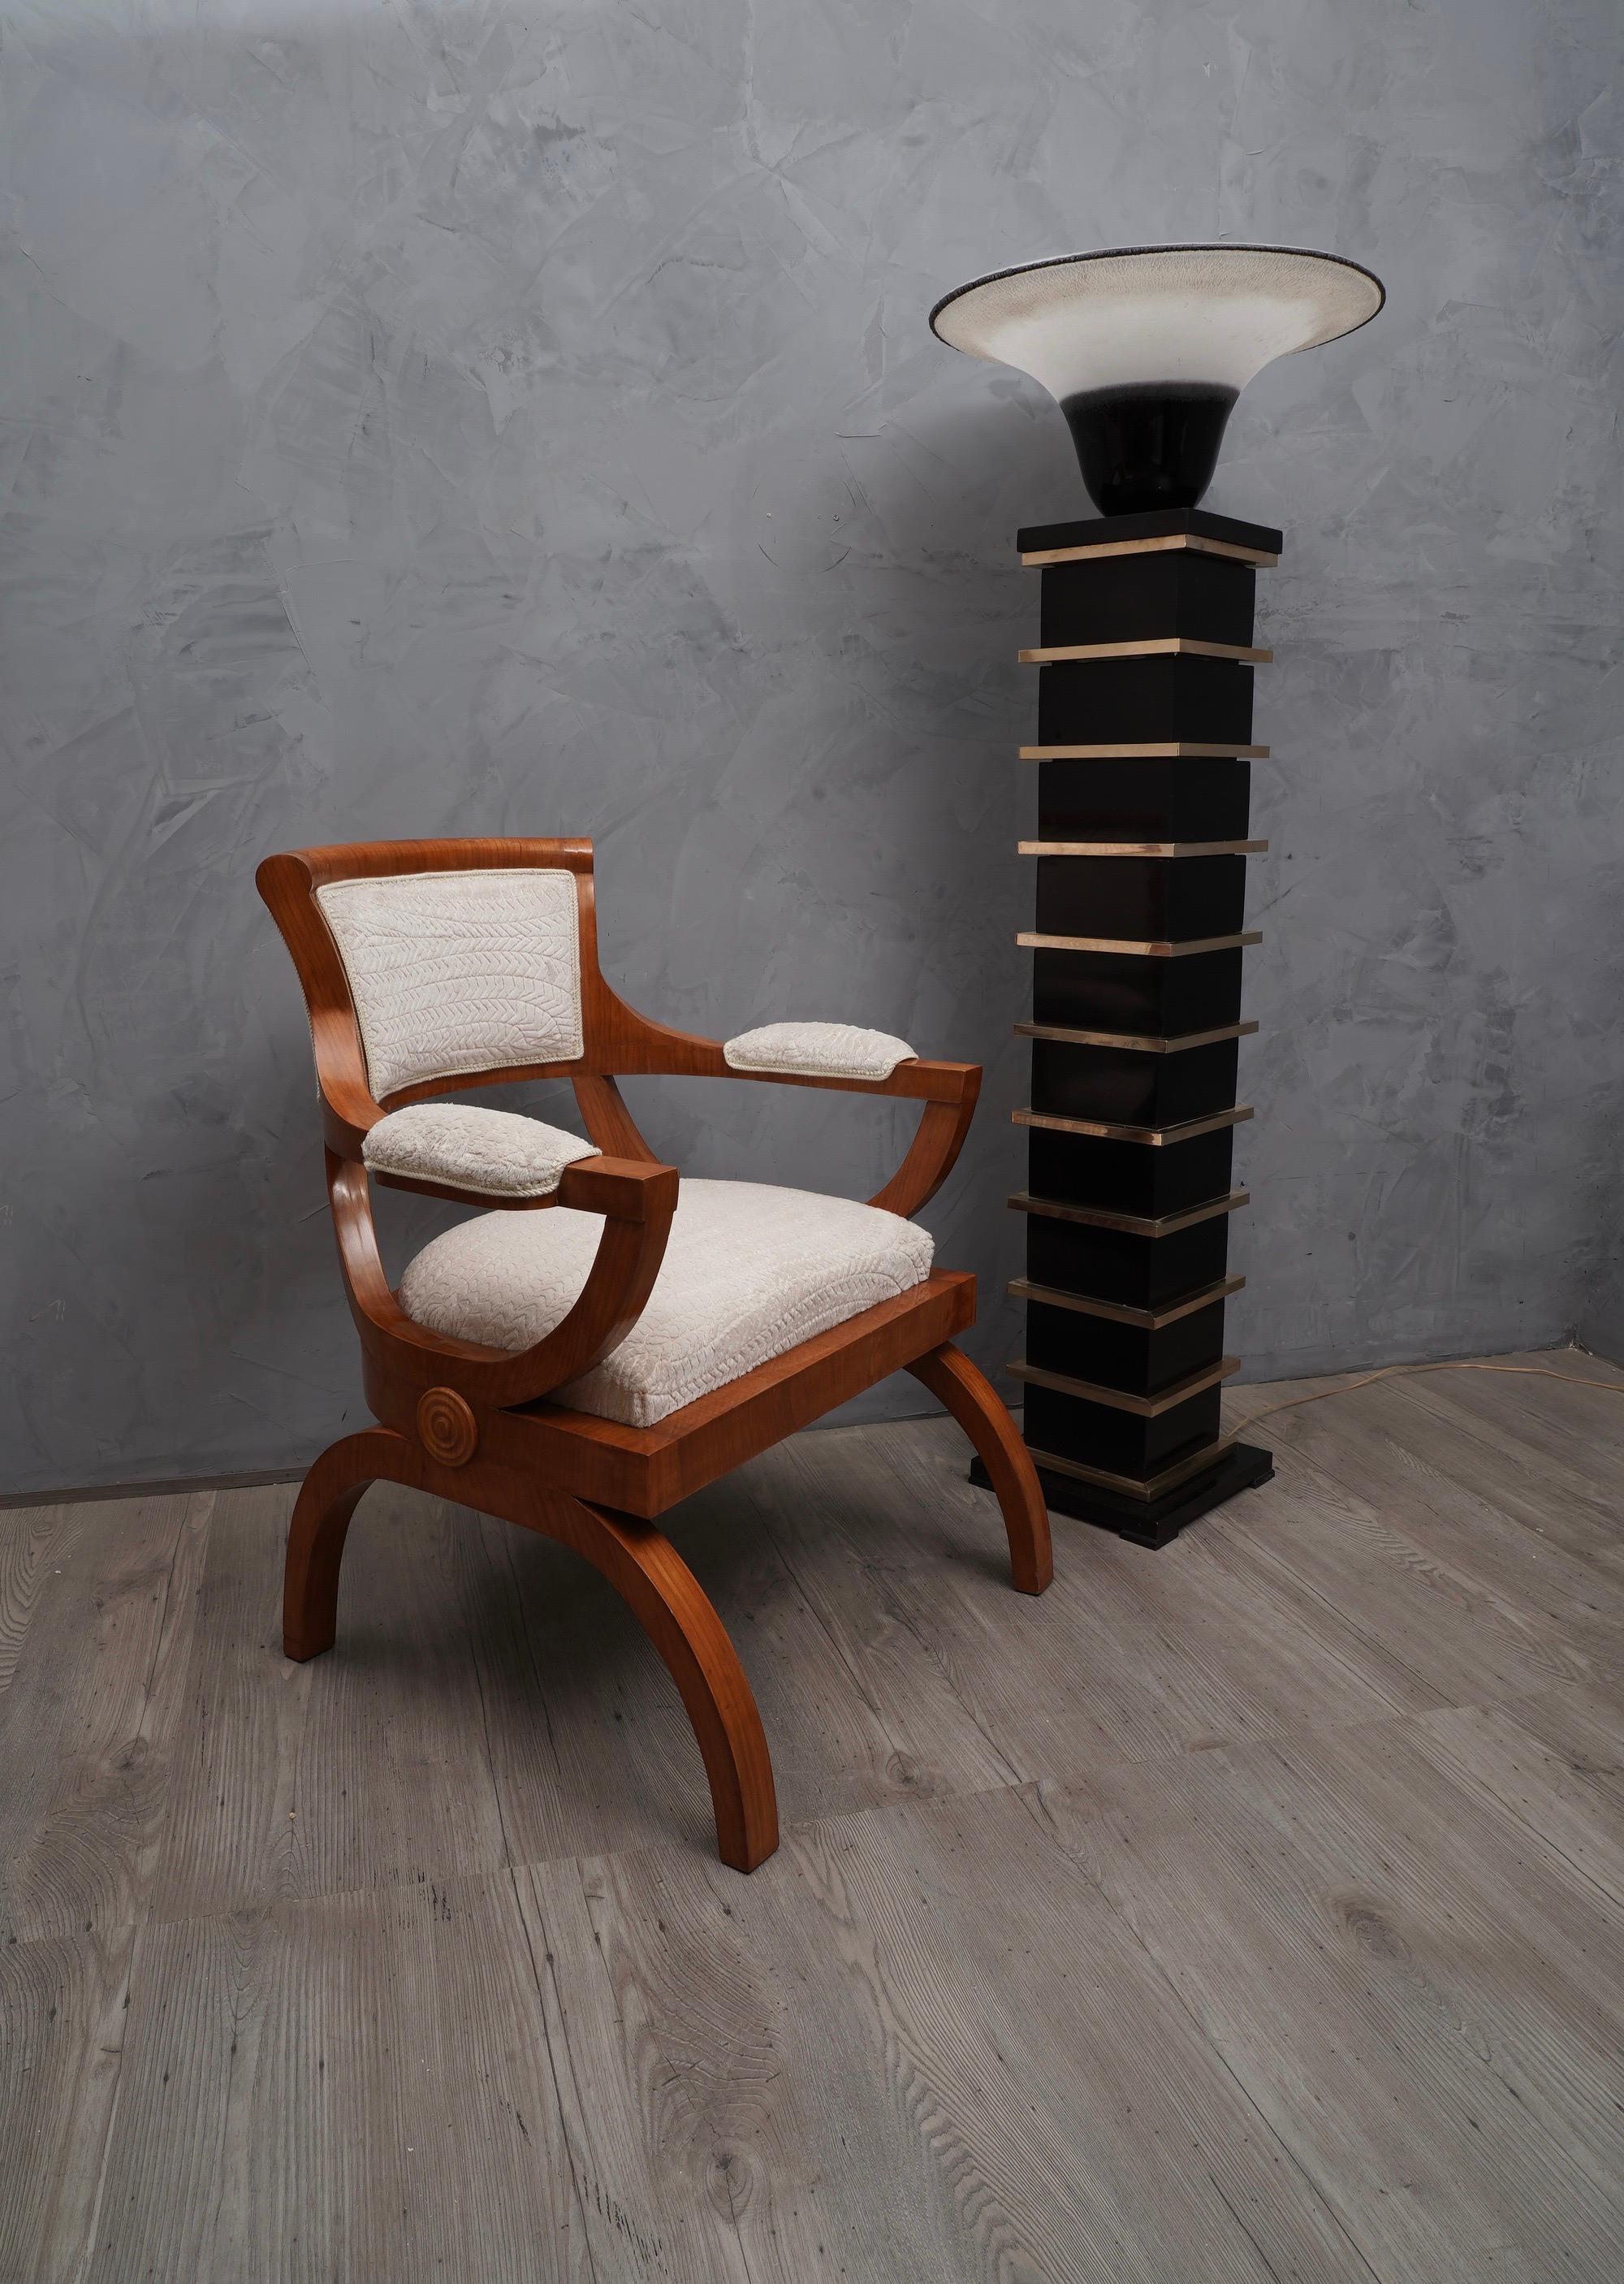 Sessel mit besonderem Design und edlem Kirschbaumholz, bezogen mit einem schönen weißen, abgesteppten Samtstoff.

Alles ist mit Kirschholz furniert und mit weißem, besticktem Samtstoff bezogen. Das Design des Stuhls ist sehr speziell und modern. Die